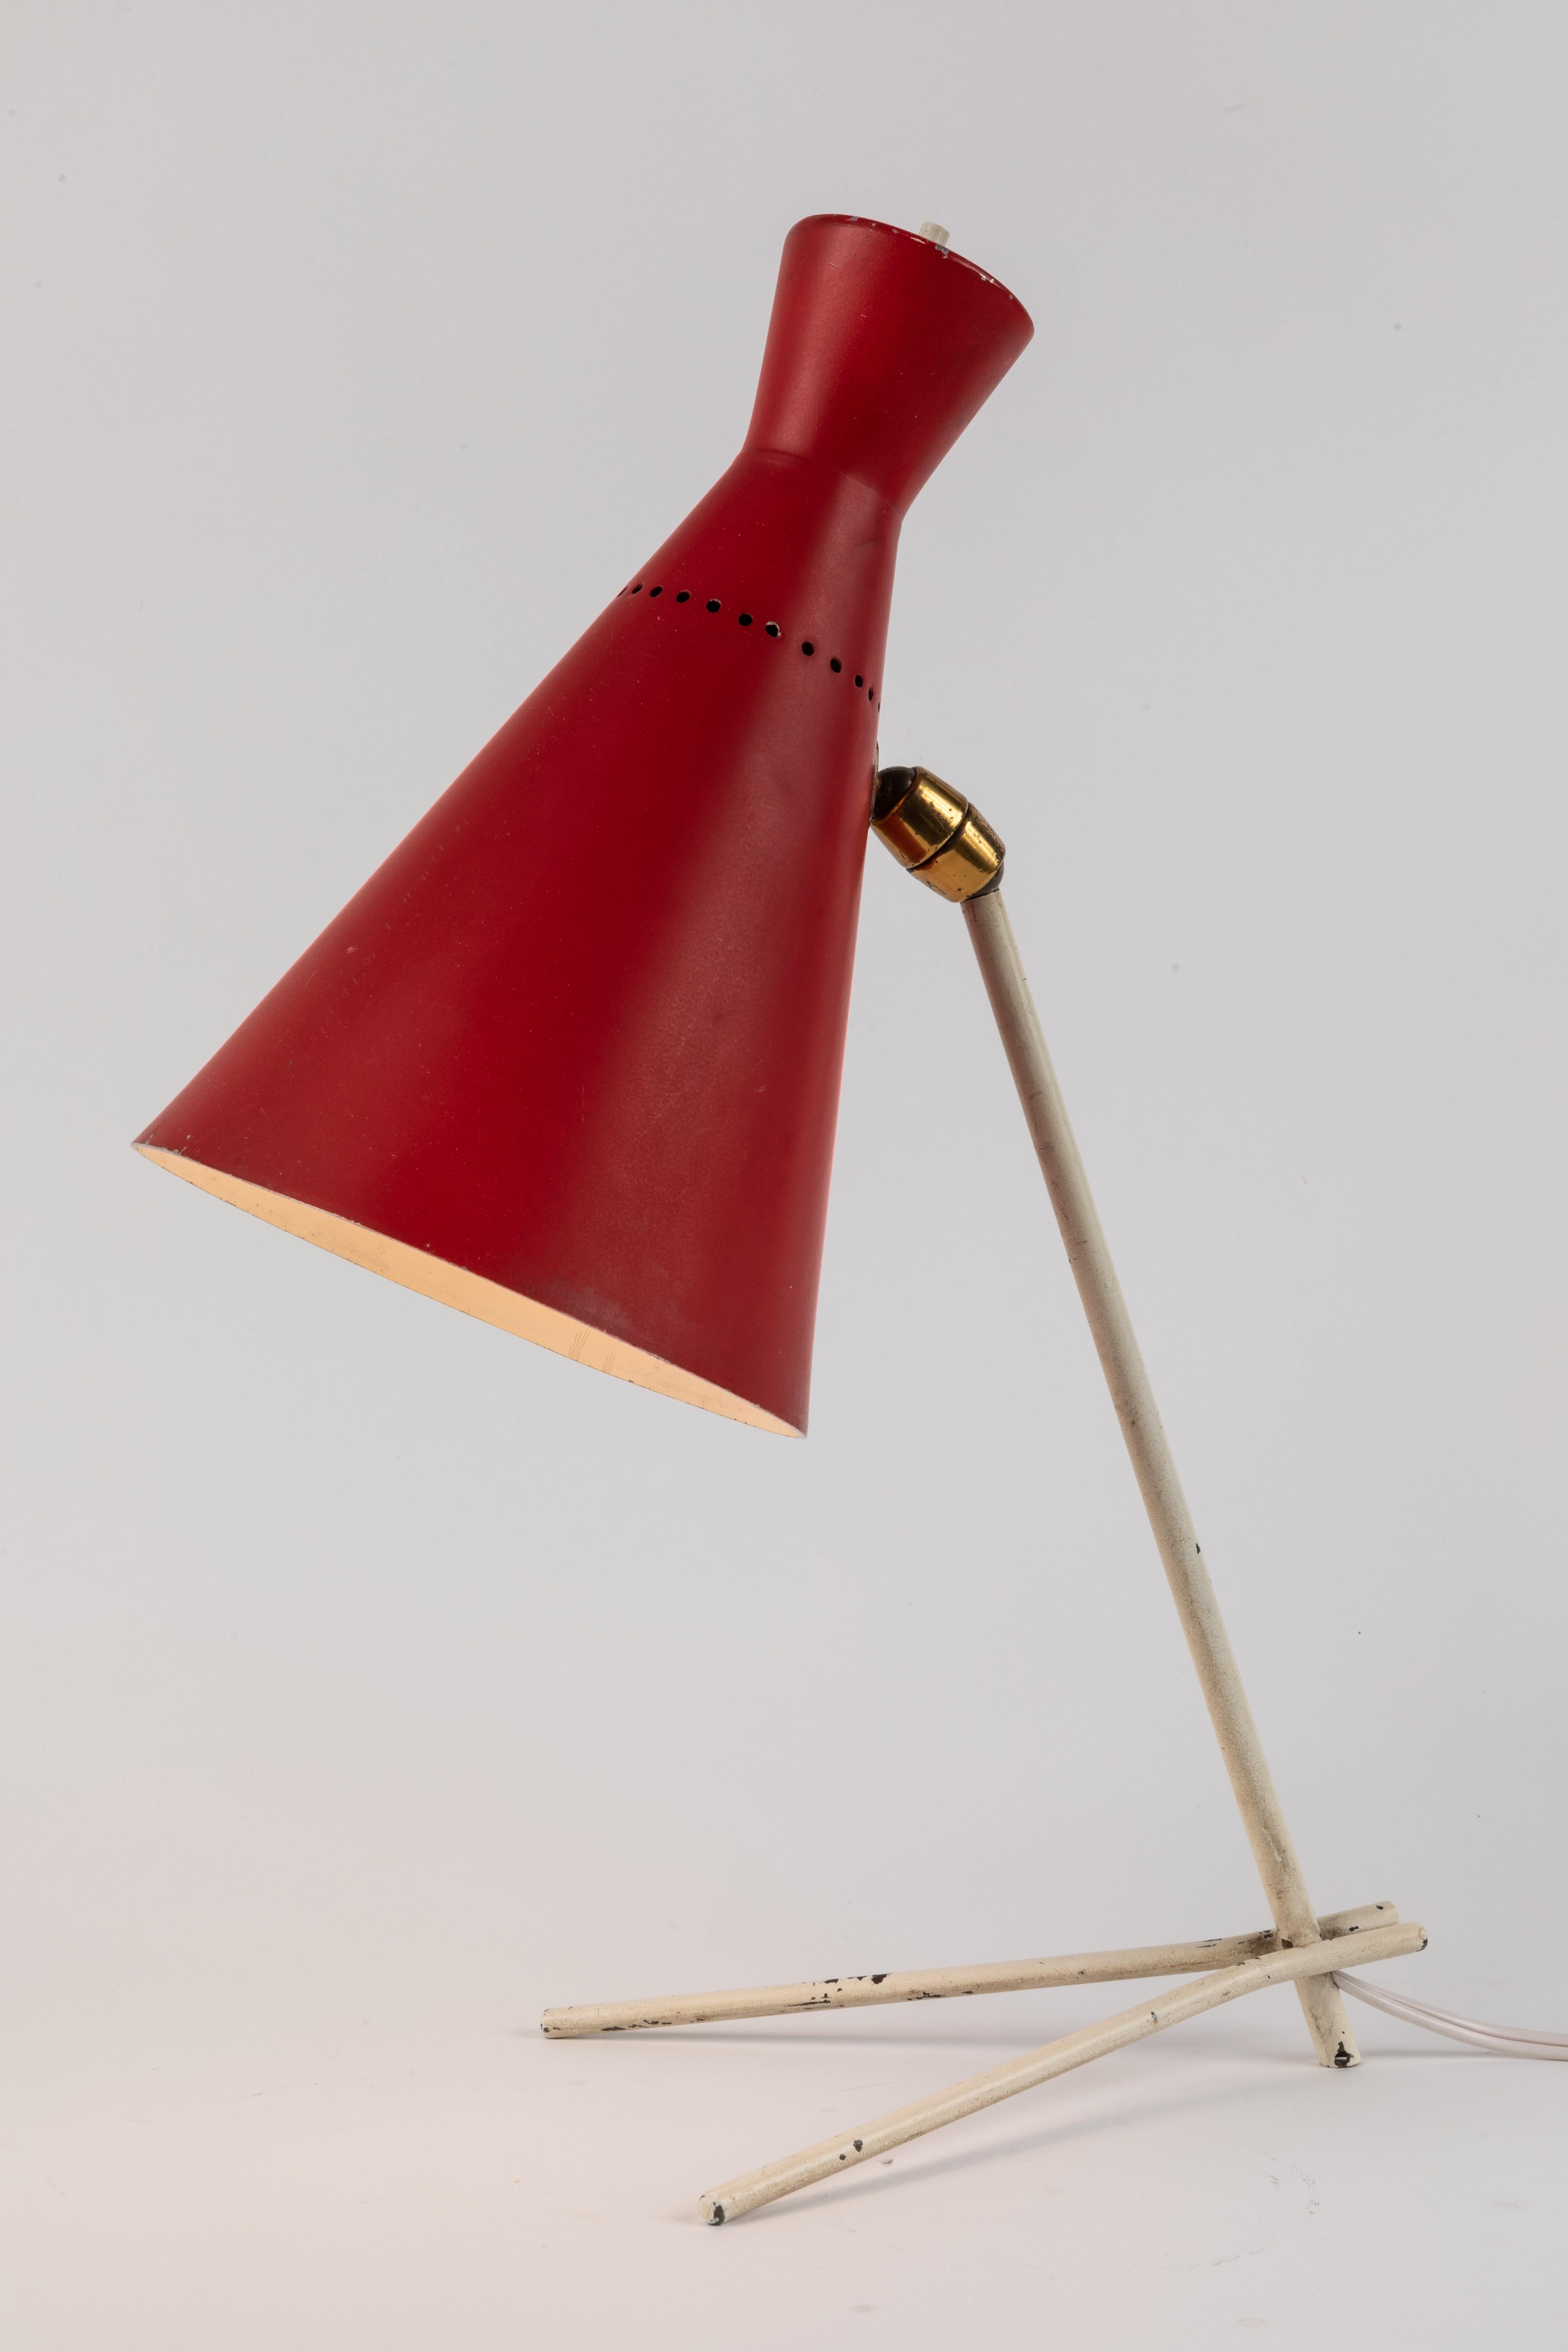 Rot-weiße Tischlampe Stilux Milano aus den 1950er-Jahren. Dieses äußerst seltene und ikonische Design ist in rot und weiß lackiertem Metall mit Originalfarbe in sehr gutem Vintage-Zustand ausgeführt. An zwei Punkten verstellbarer Schirm für eine